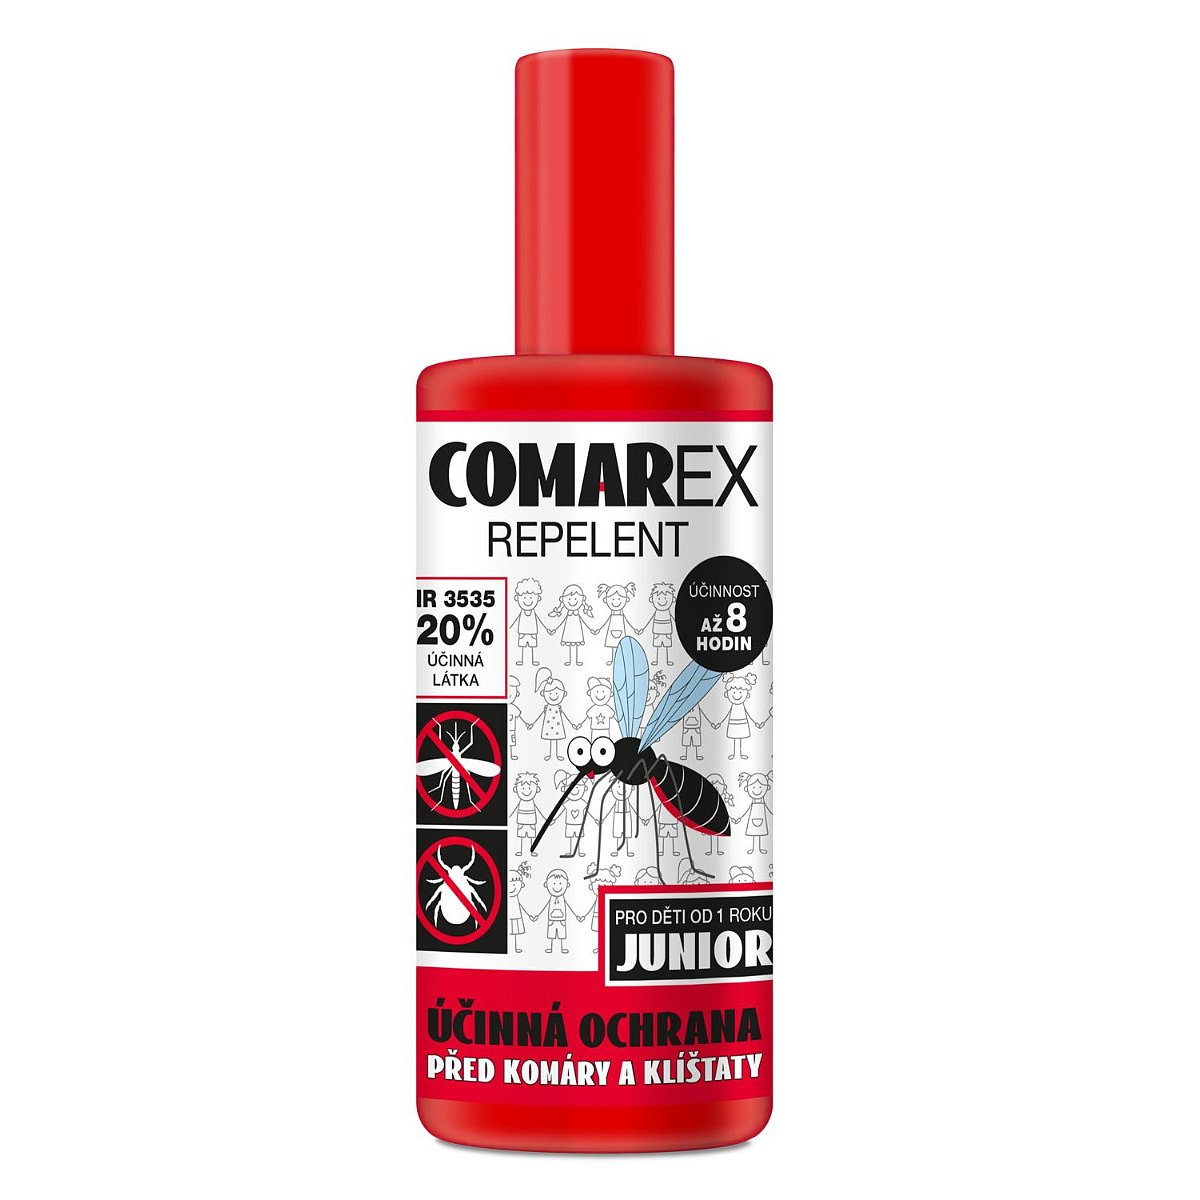 ComarEX Repelent Junior spray 120 ml